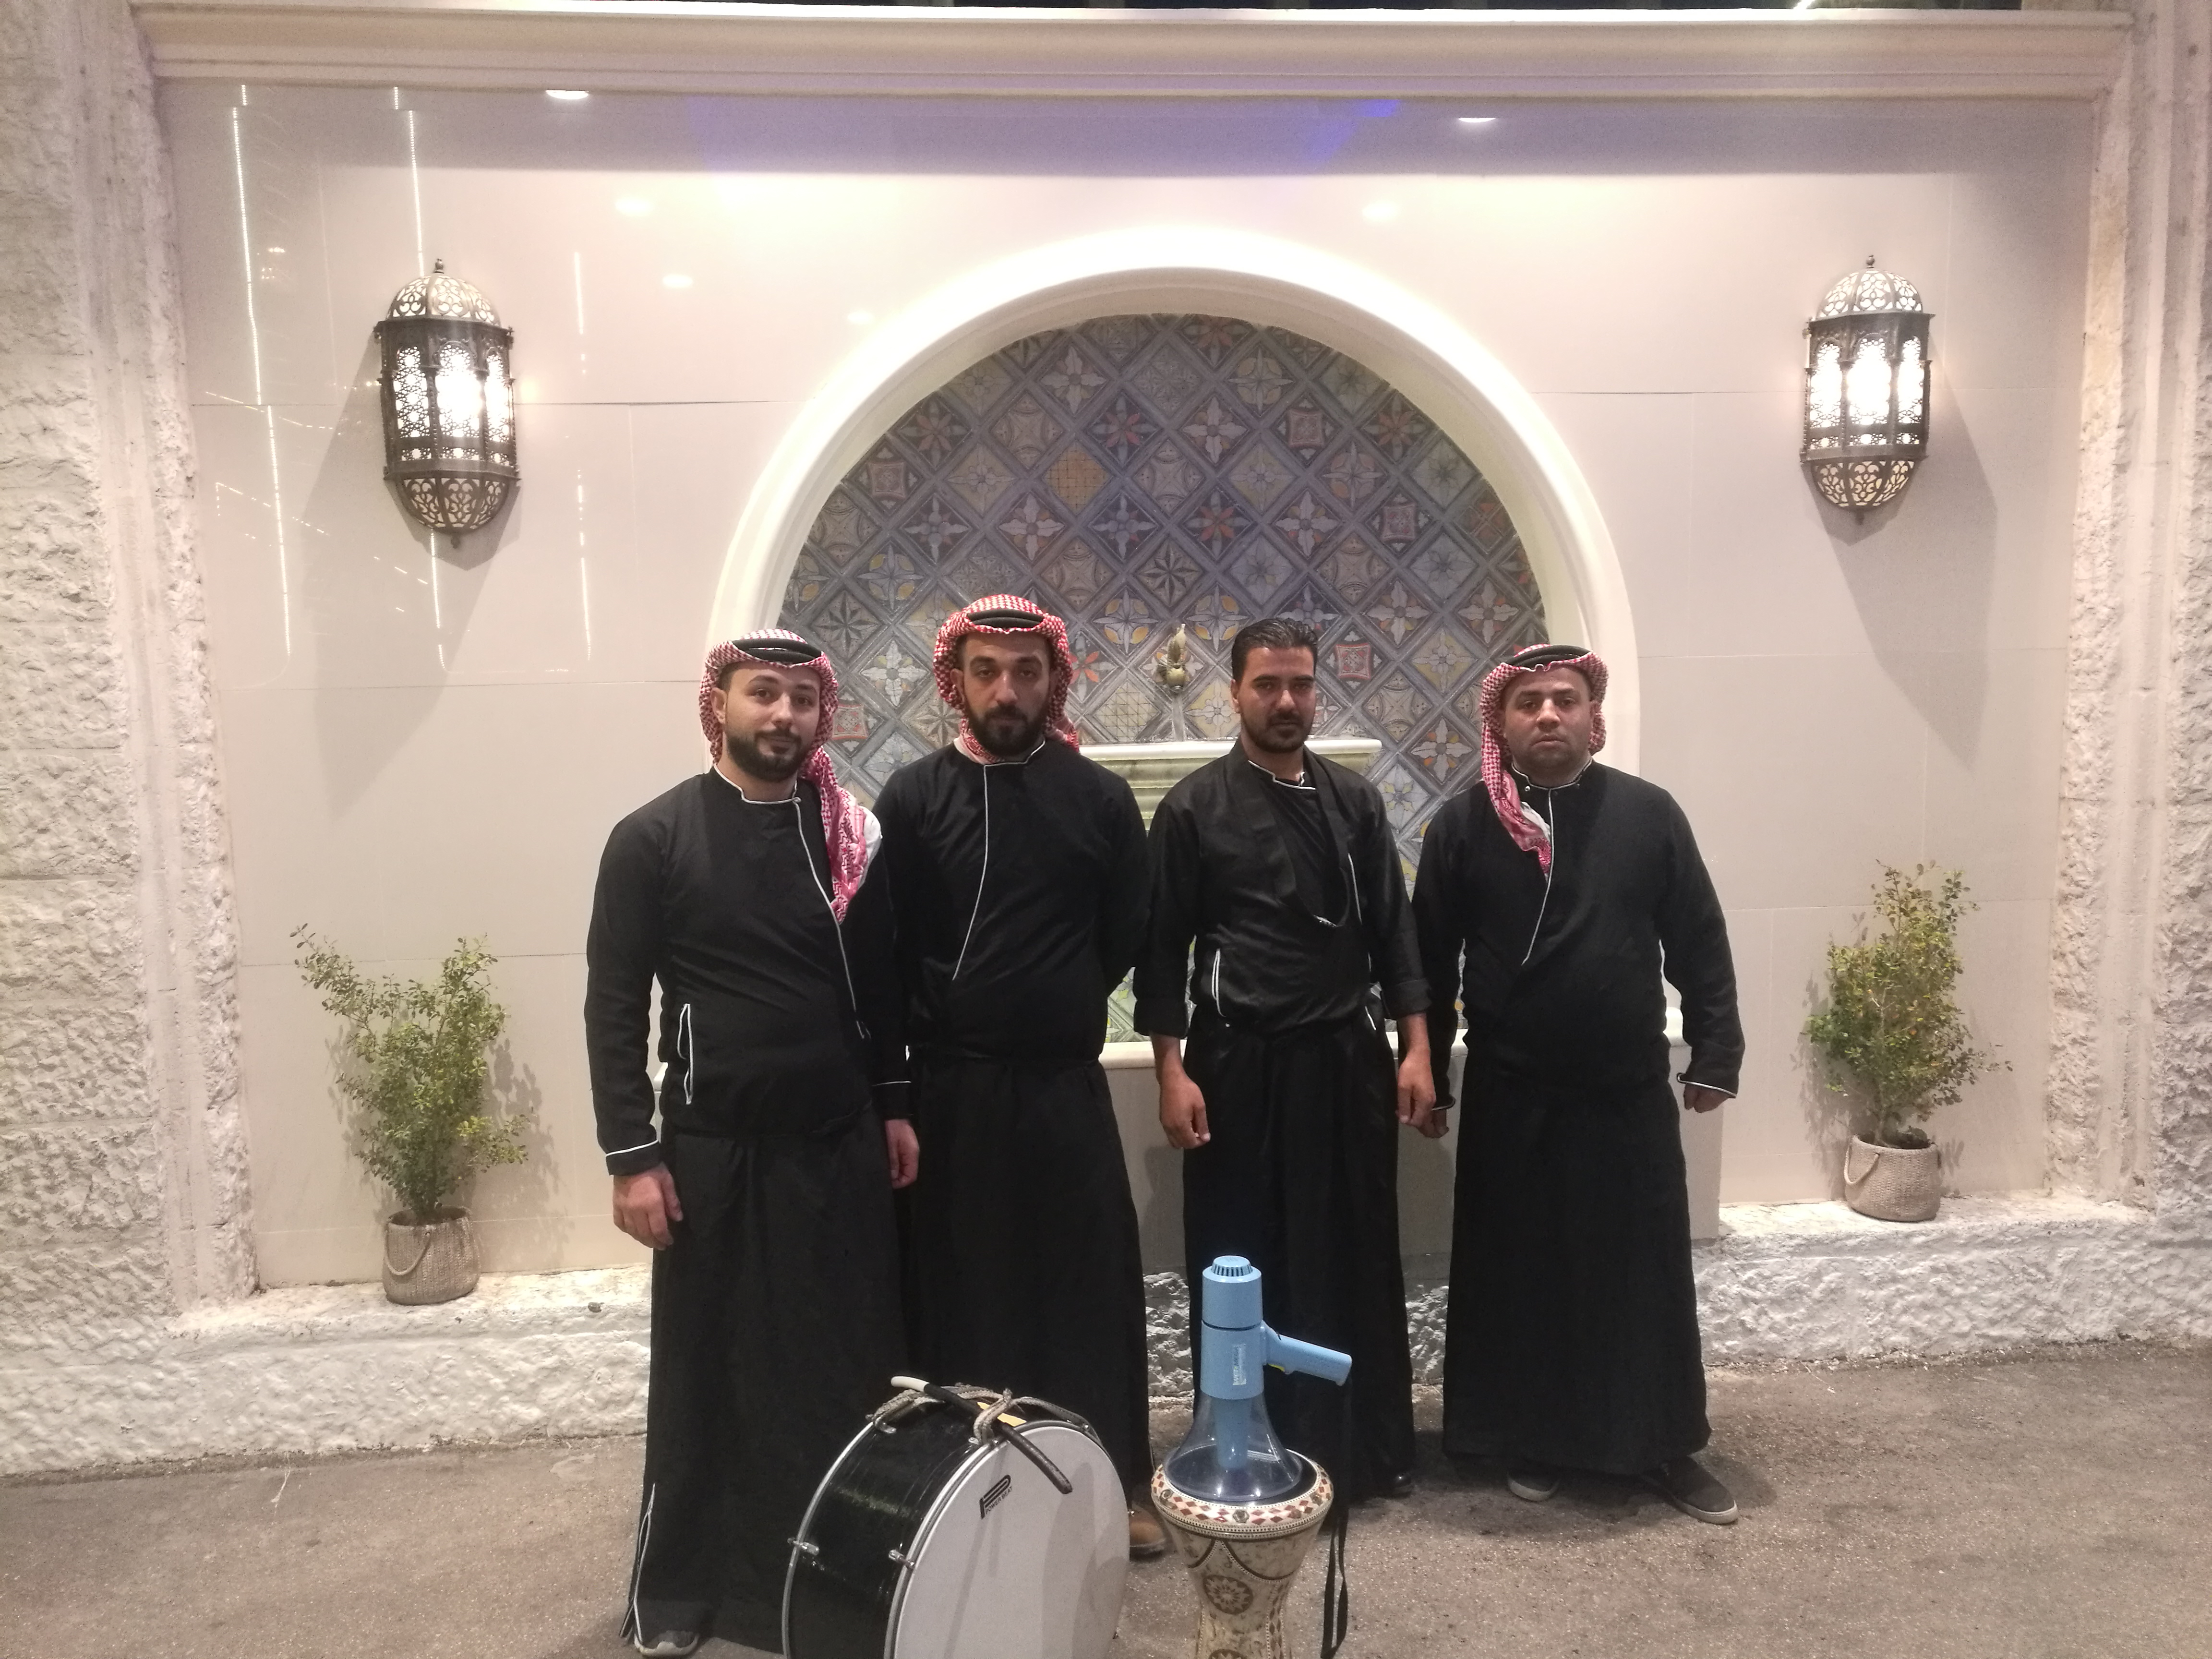 تنظيم وإدارة الفعاليات في دبي Rental Joy هي شركة لتأجير المعدات متعددة الأغراض في دولة الإما-  فرقة زفة 0798262121. زفتك...